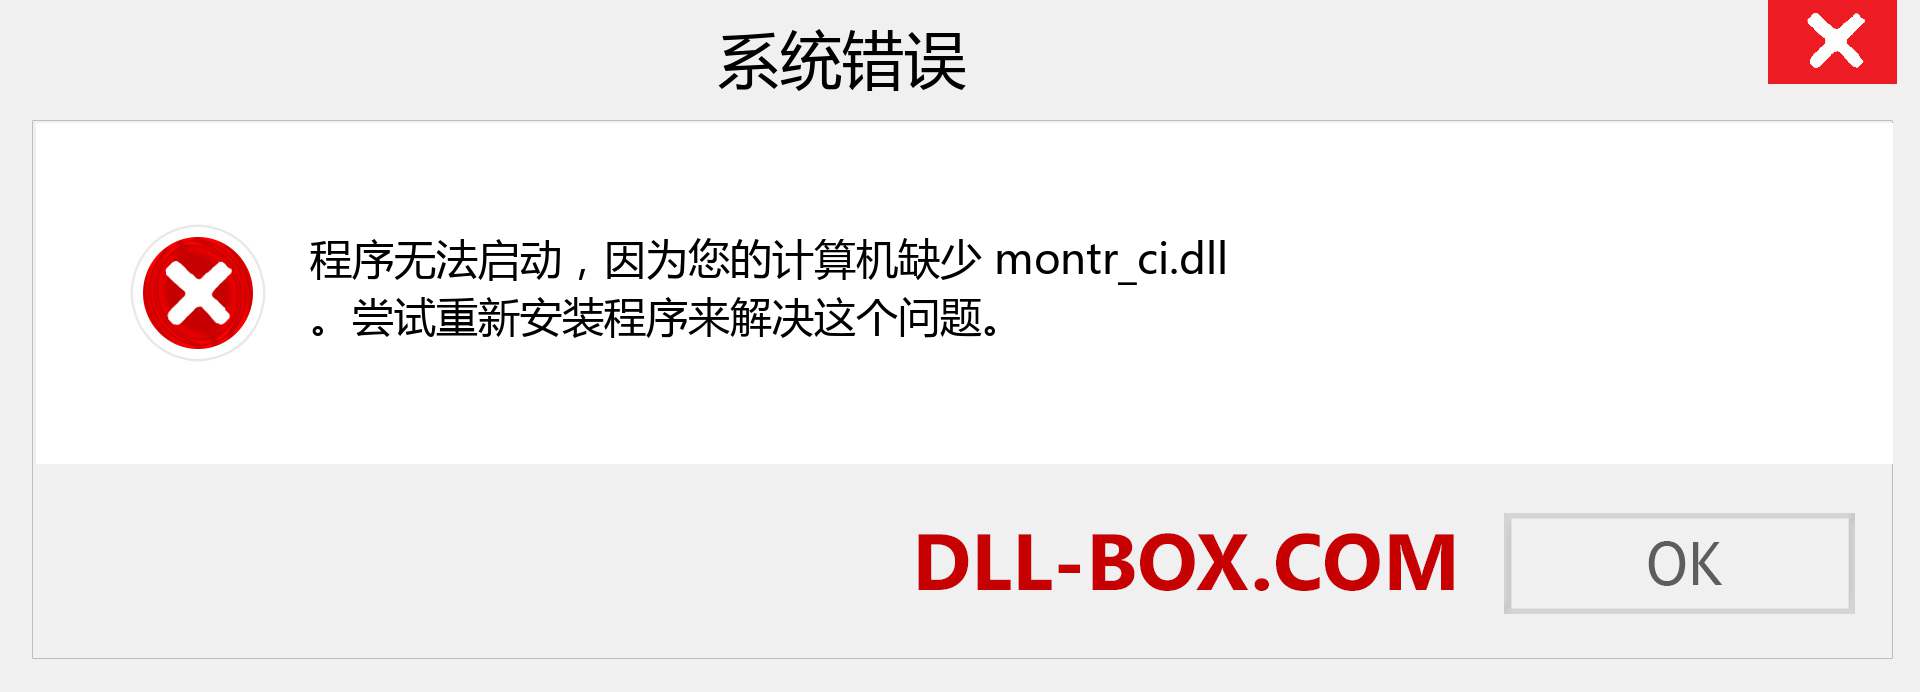 montr_ci.dll 文件丢失？。 适用于 Windows 7、8、10 的下载 - 修复 Windows、照片、图像上的 montr_ci dll 丢失错误